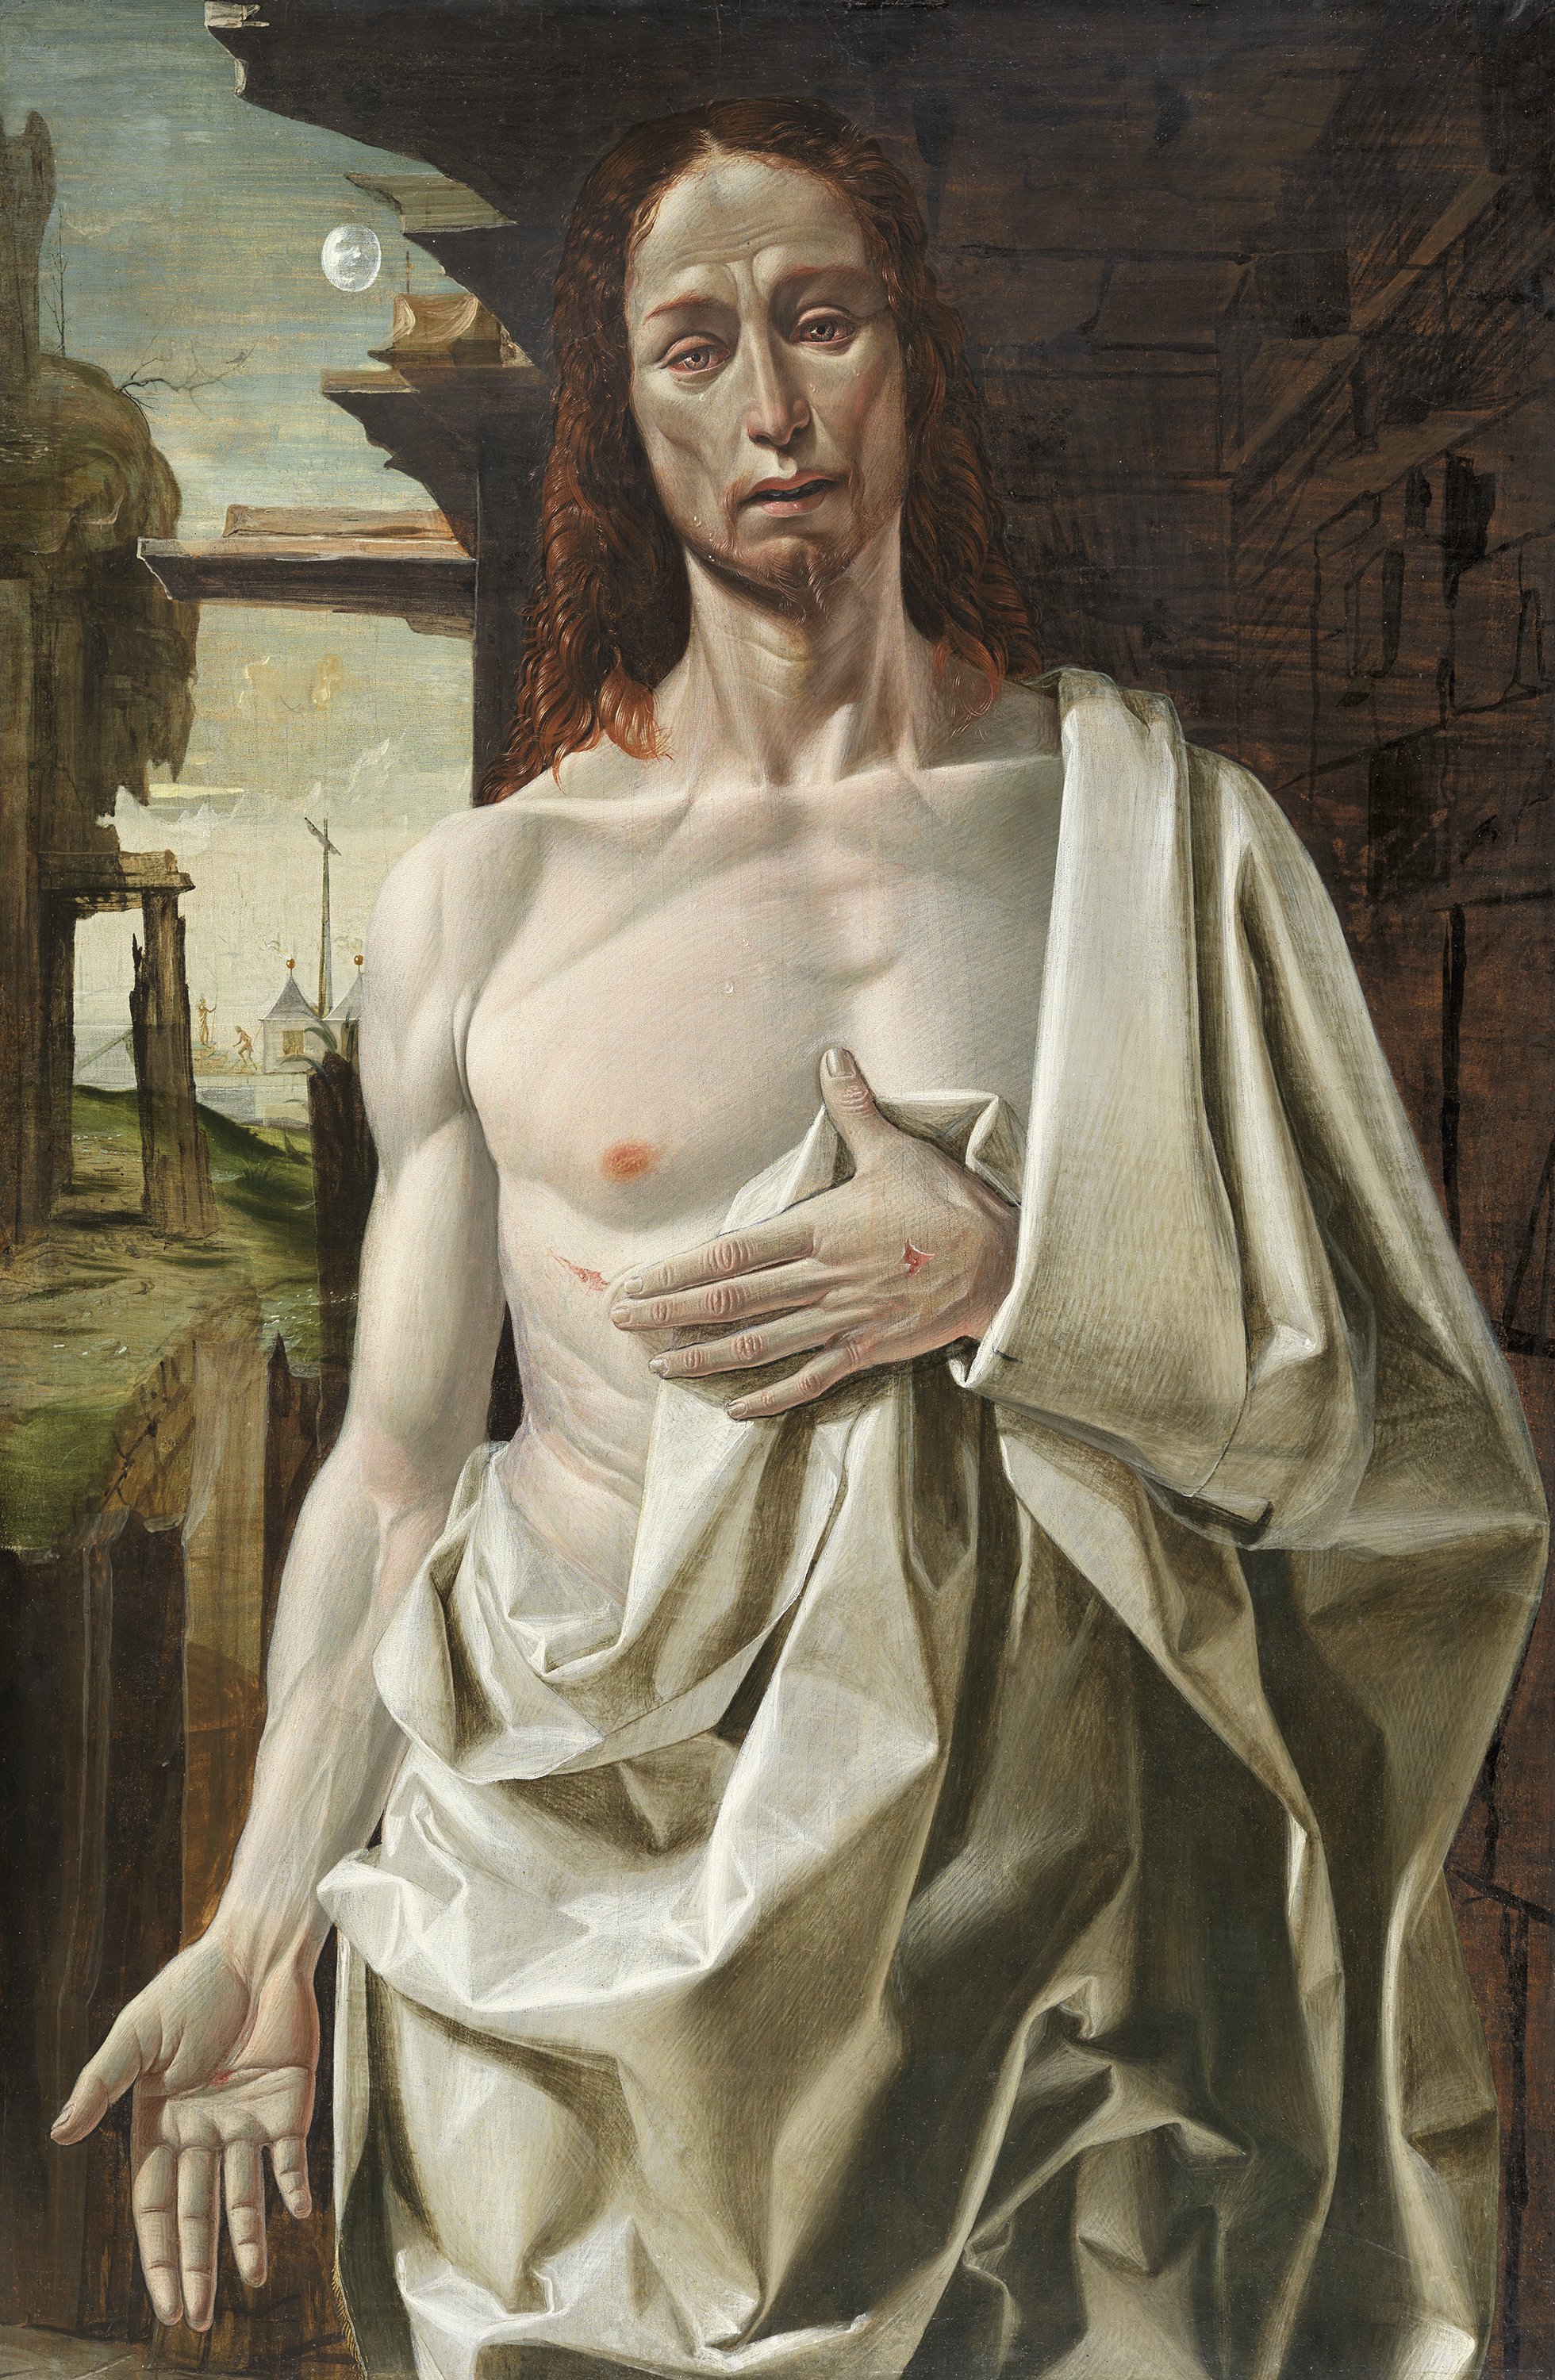 The Risen Christ. Cristo resucitado, c. 1490